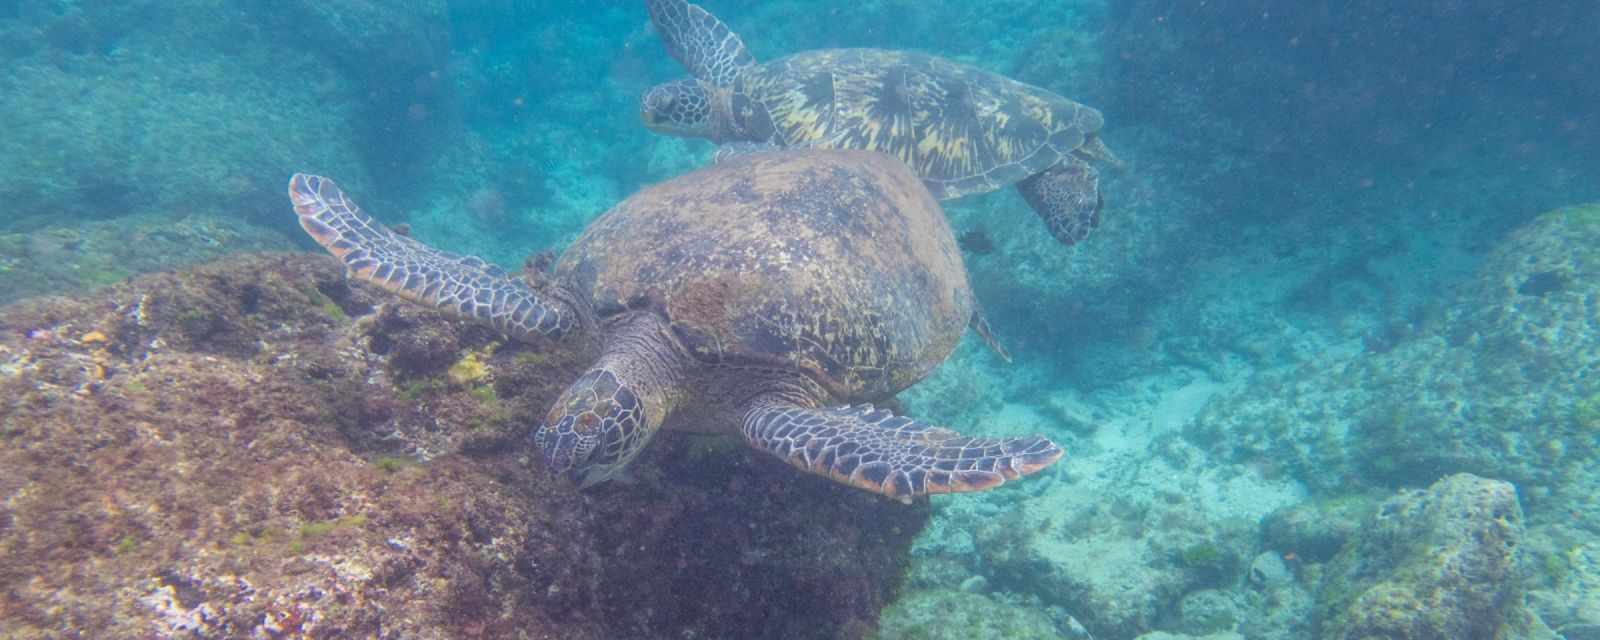 Green Sea Turtles at Xiao Liuqiu Island